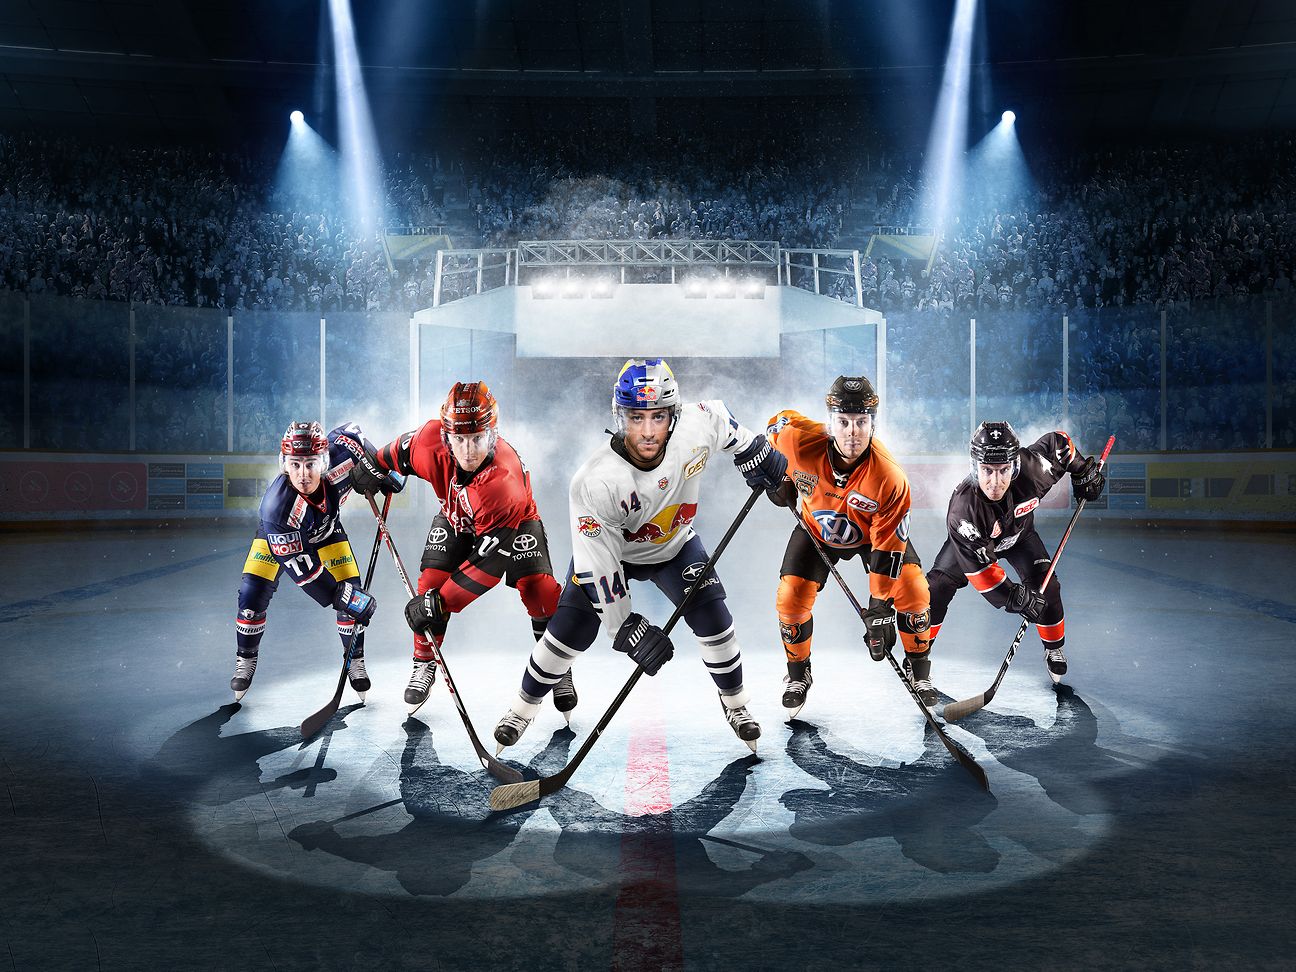 Nach Olympia-Wunder von Pyeongchang die Eishockey-Helden bei Telekom Sport Deutsche Telekom